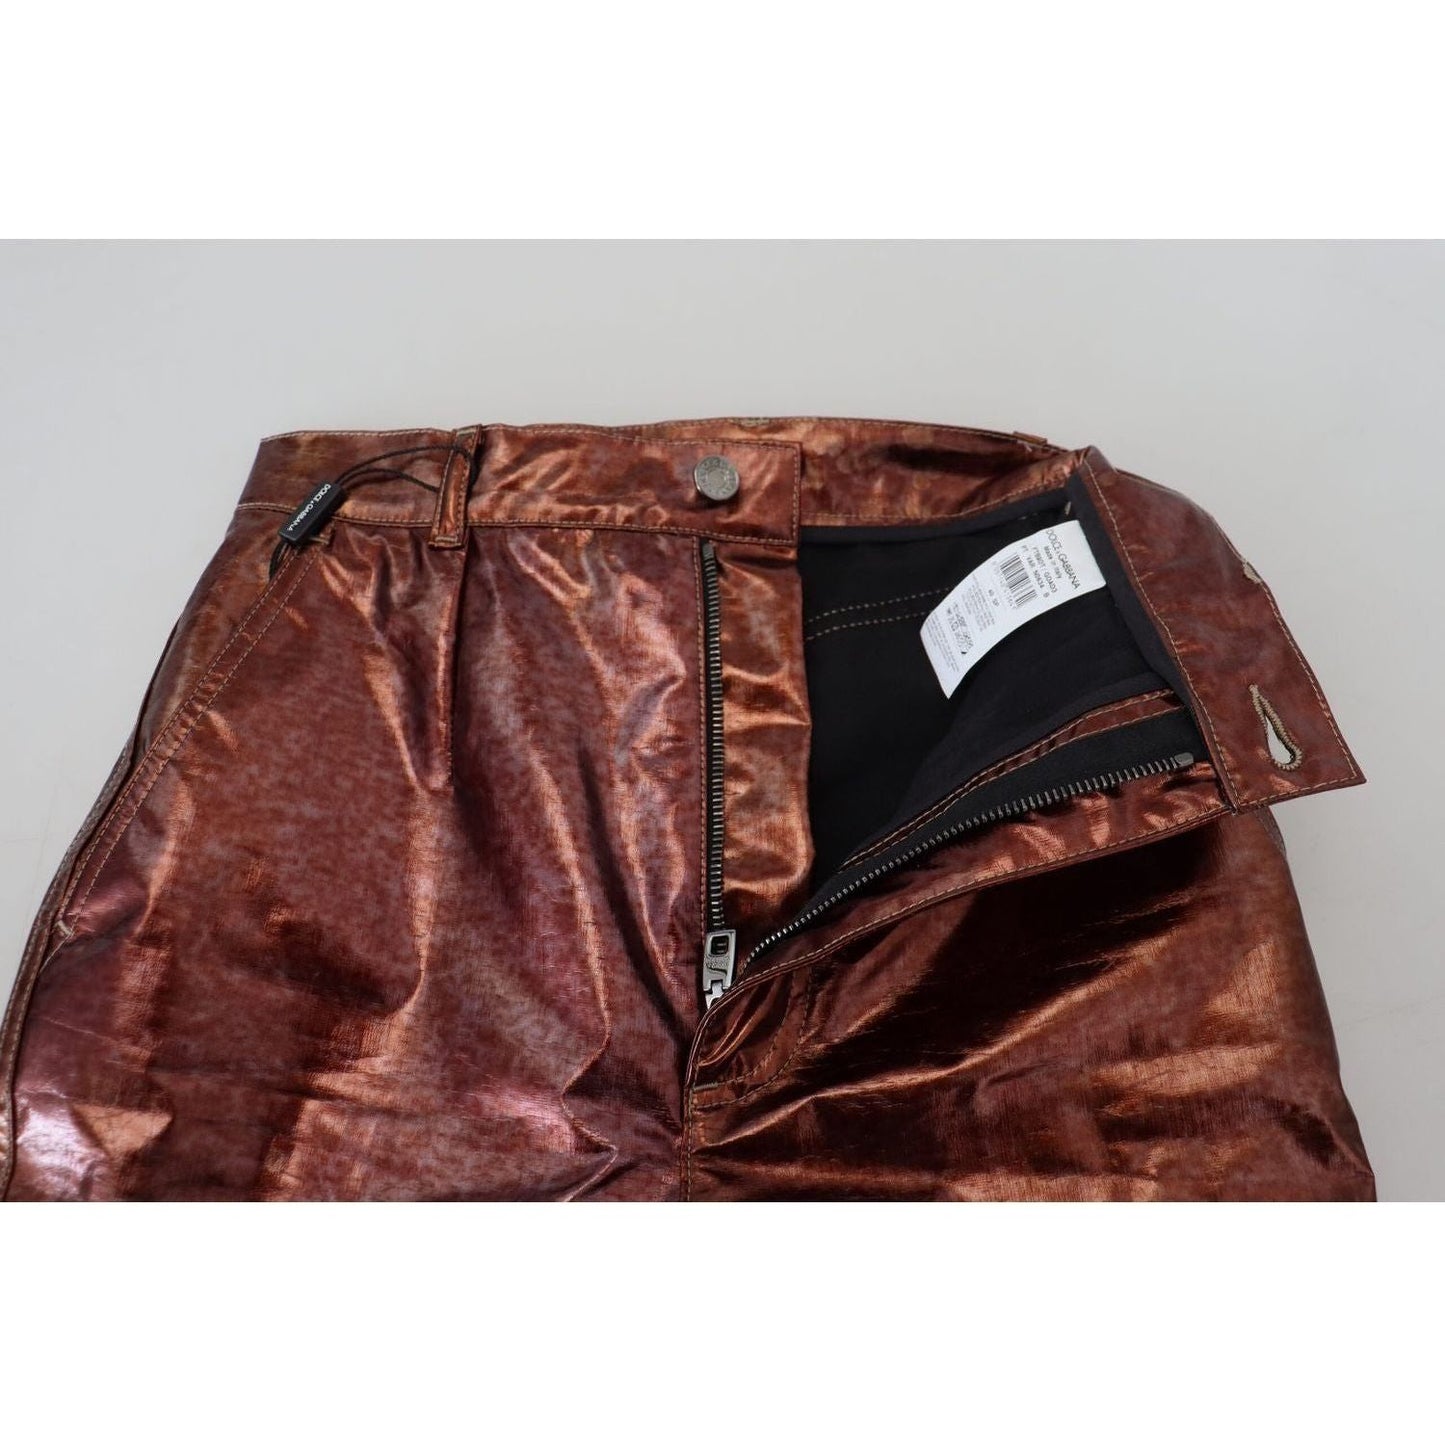 Dolce & GabbanaHigh Waist Skinny Jeans in Metallic BronzeMcRichard Designer Brands£569.00